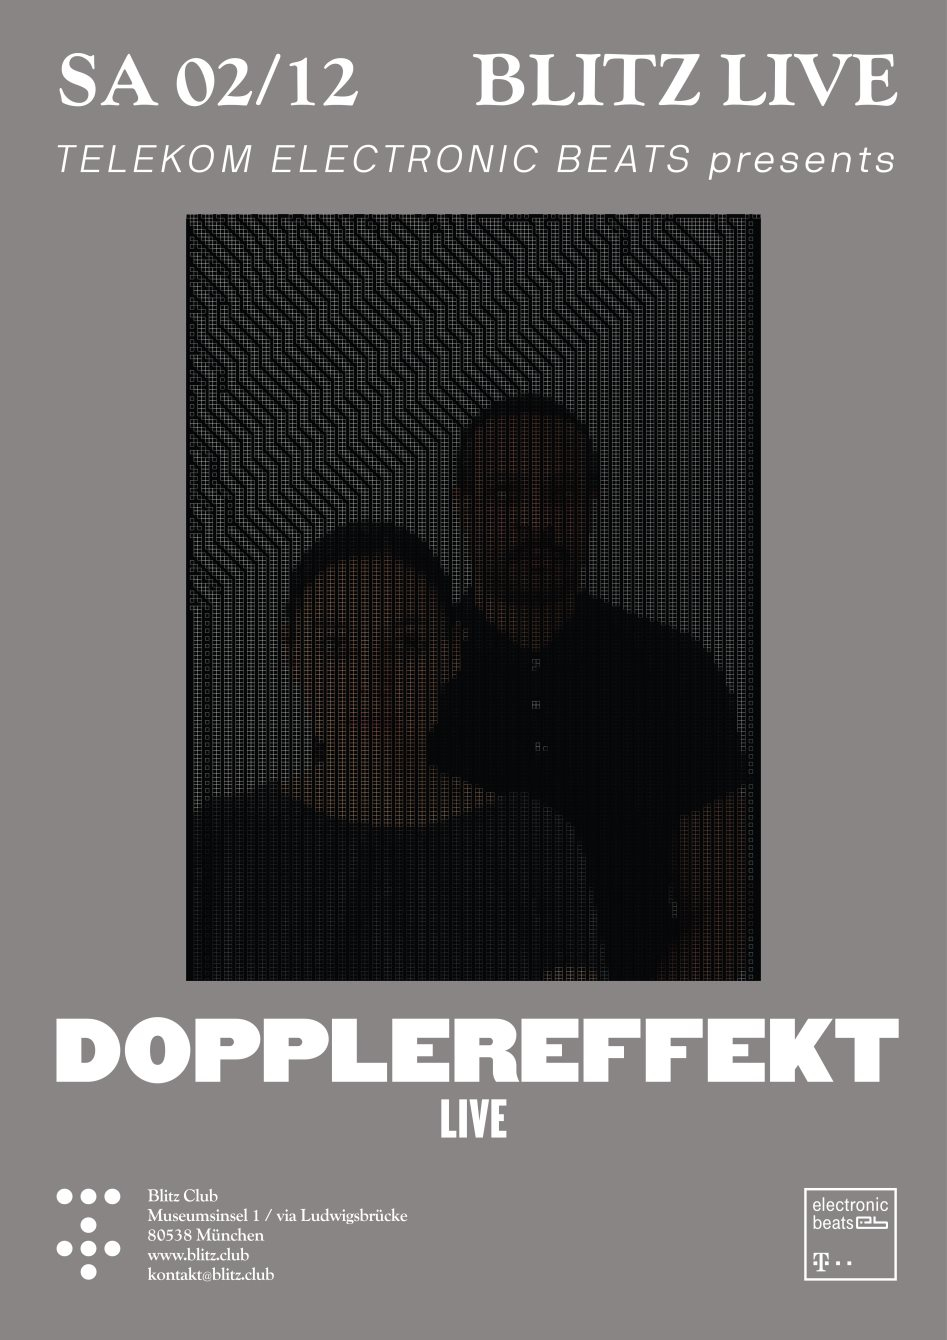 Dopplereffekt Pres. by Telekom Electronic Beats - Flyer back